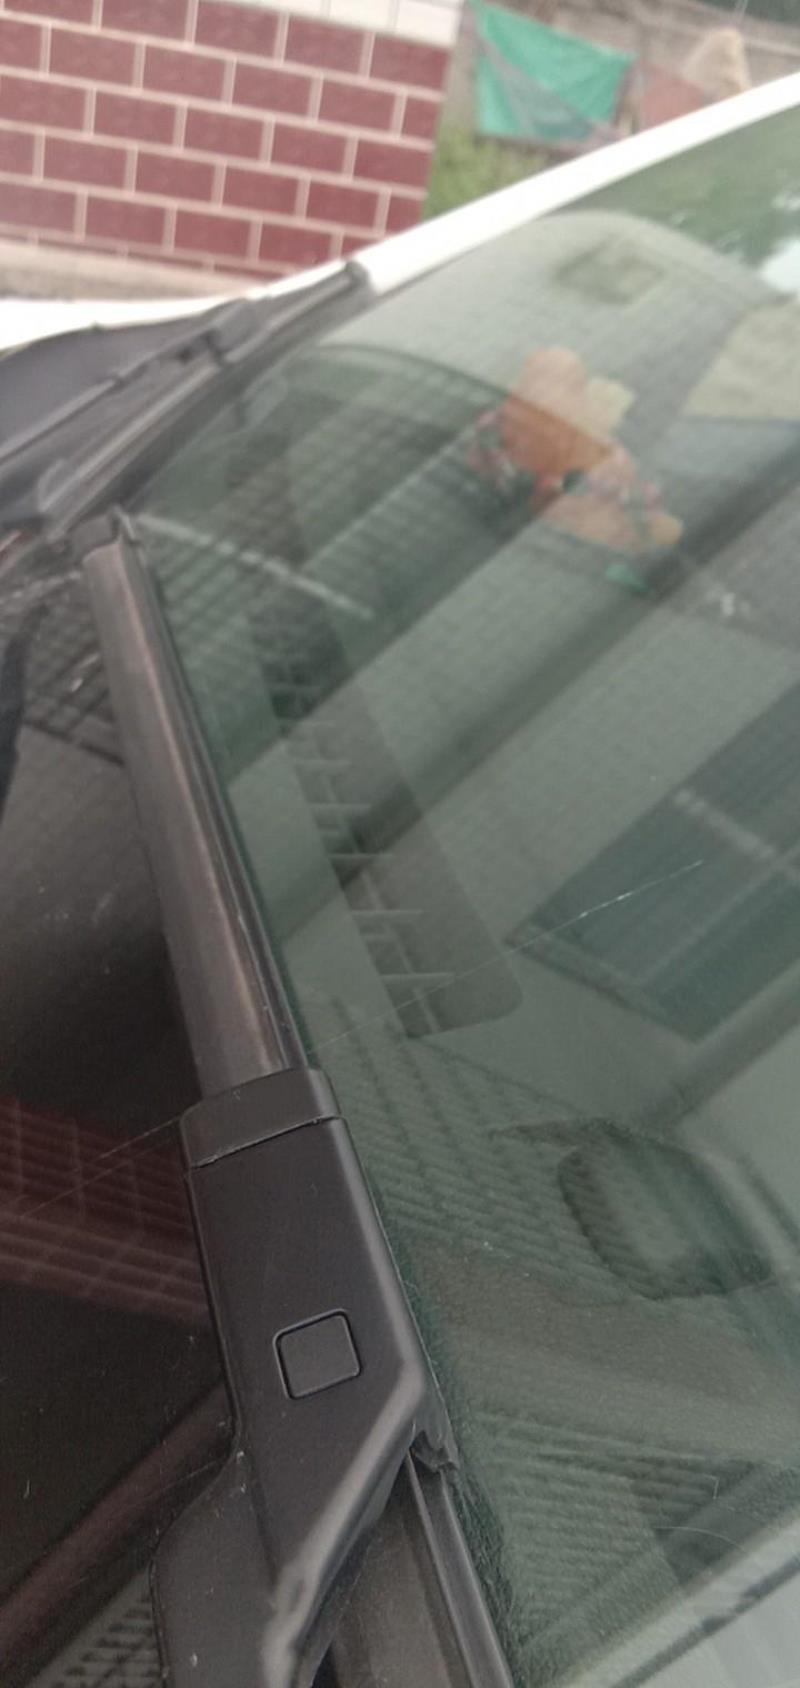 为什么二零一九款的福睿斯前挡风玻璃换了玻璃福耀的为什么会裂的?是型号不对还是玻璃太水了在修理厂换的